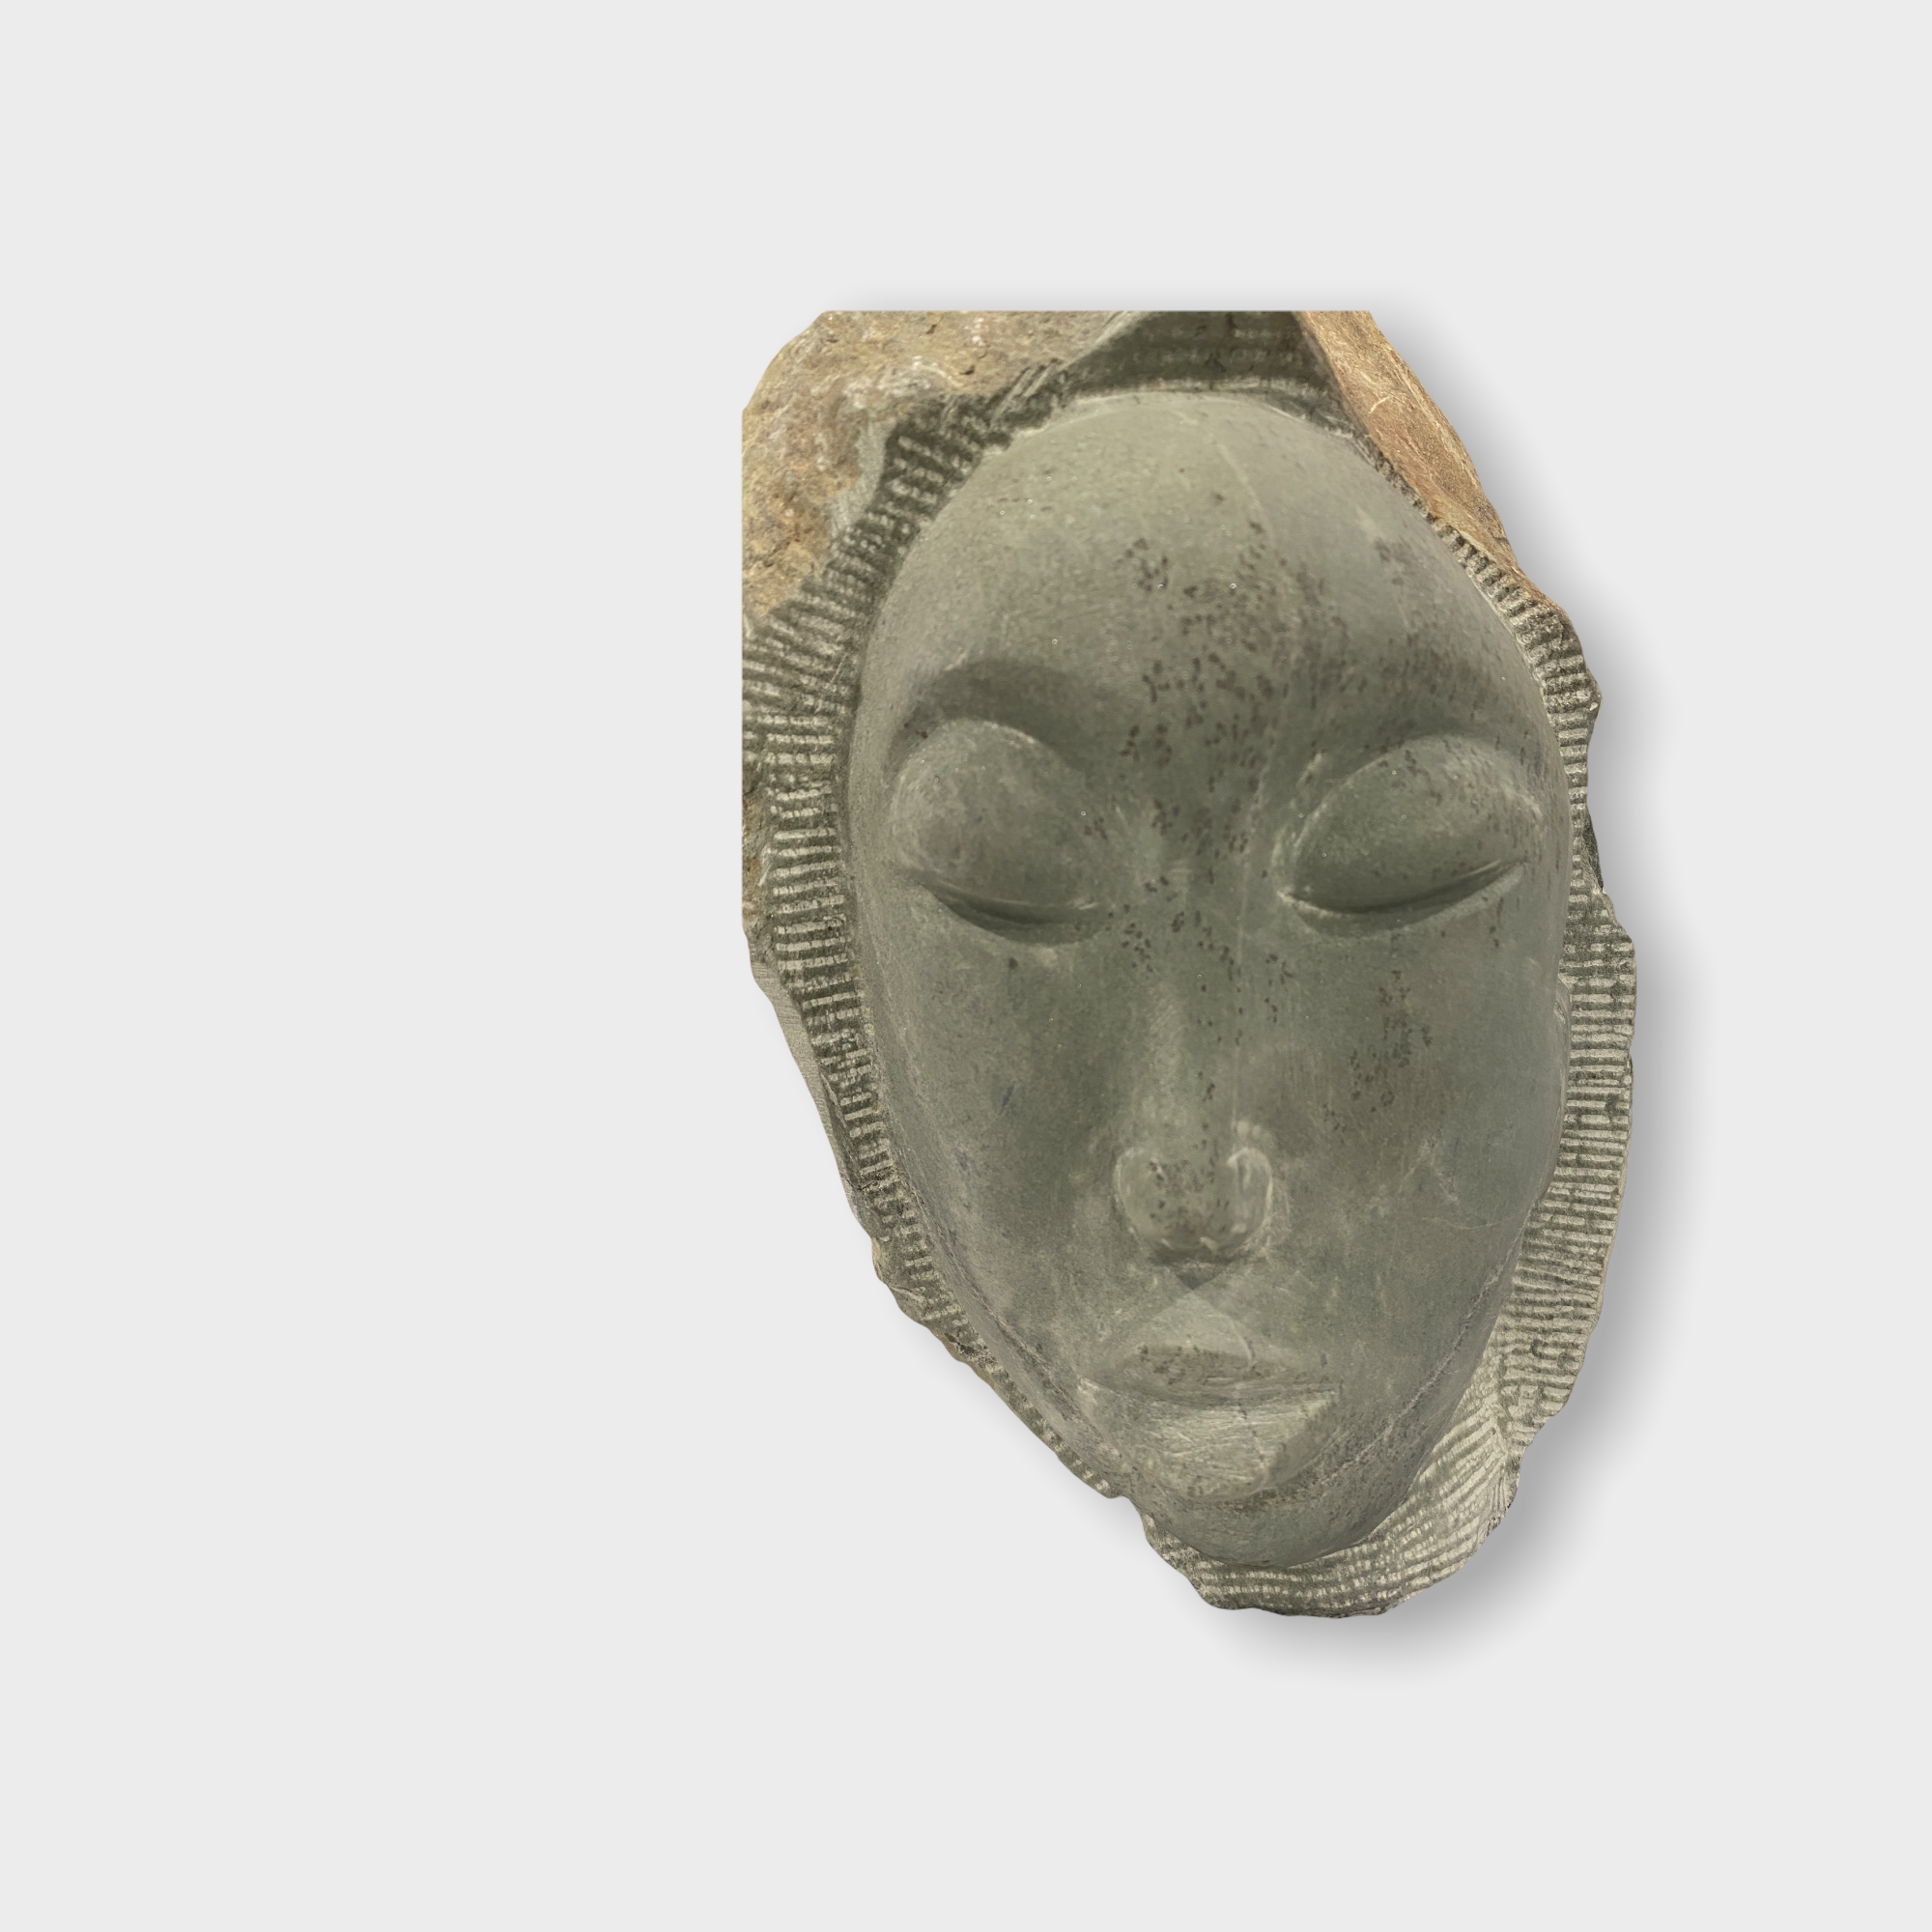 Stone head sculpture by Rizimu Chiwawa Zimbabwe (3114)